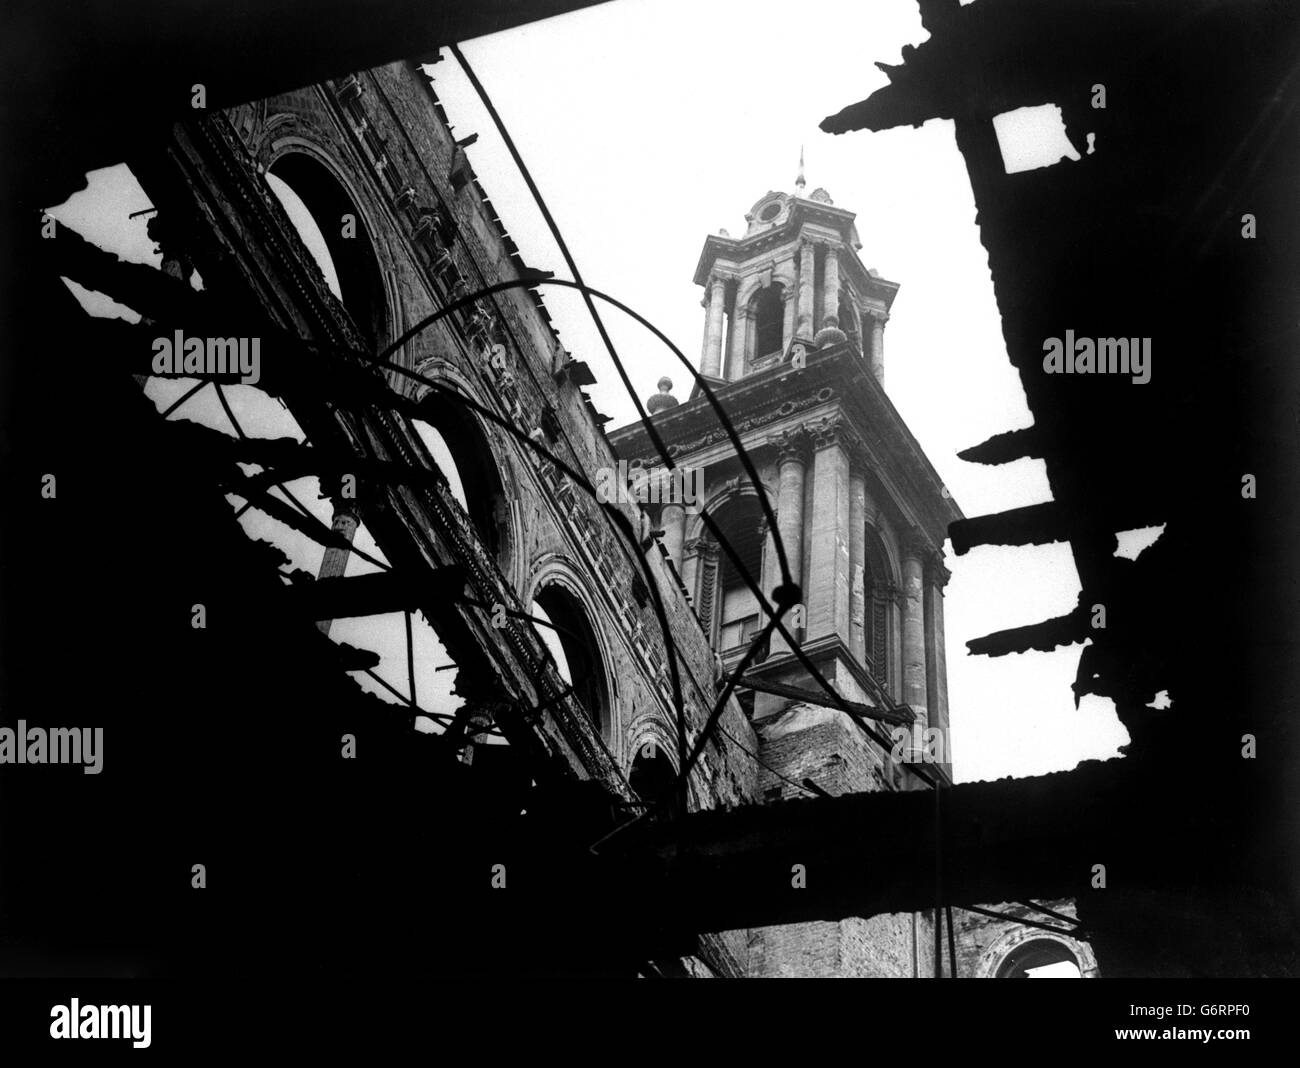 La Seconde Guerre mondiale - le blitz allemand - V2 détruit des foyers - Le Sud de l'Angleterre - 1945 Banque D'Images